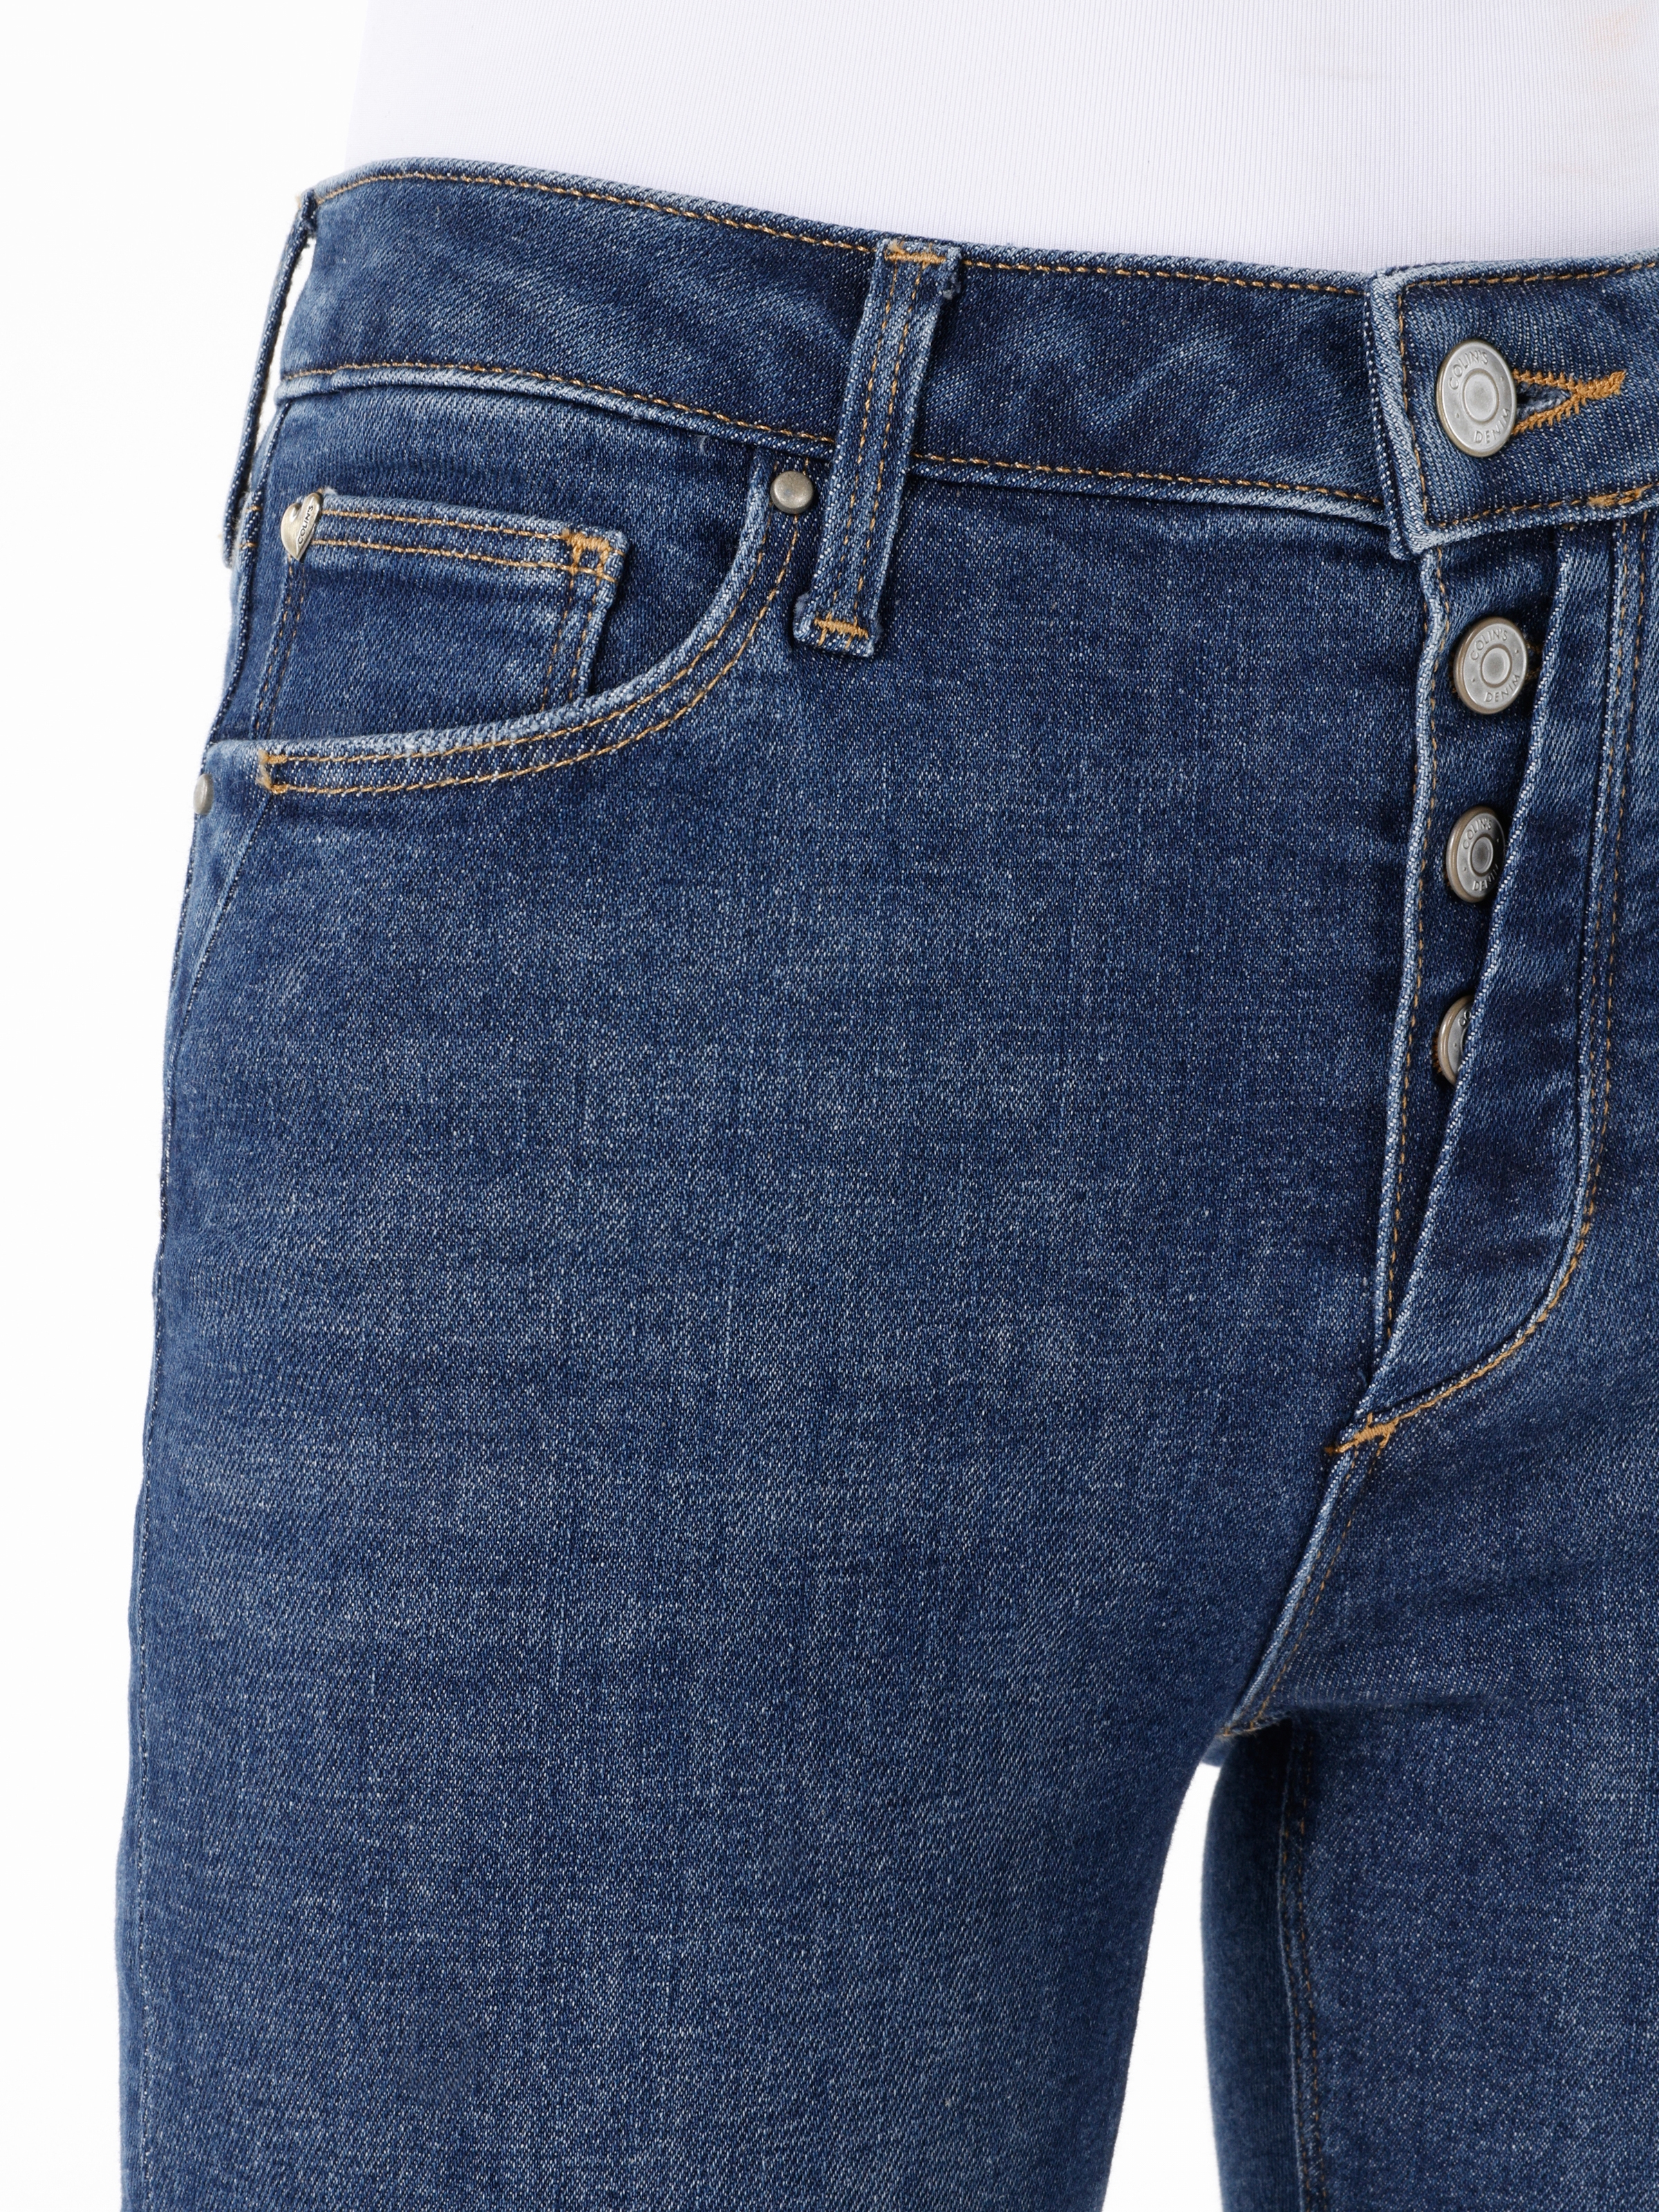 Afișați detalii pentru Pantaloni De Dama Albastru Skinny Fit 759 LARA